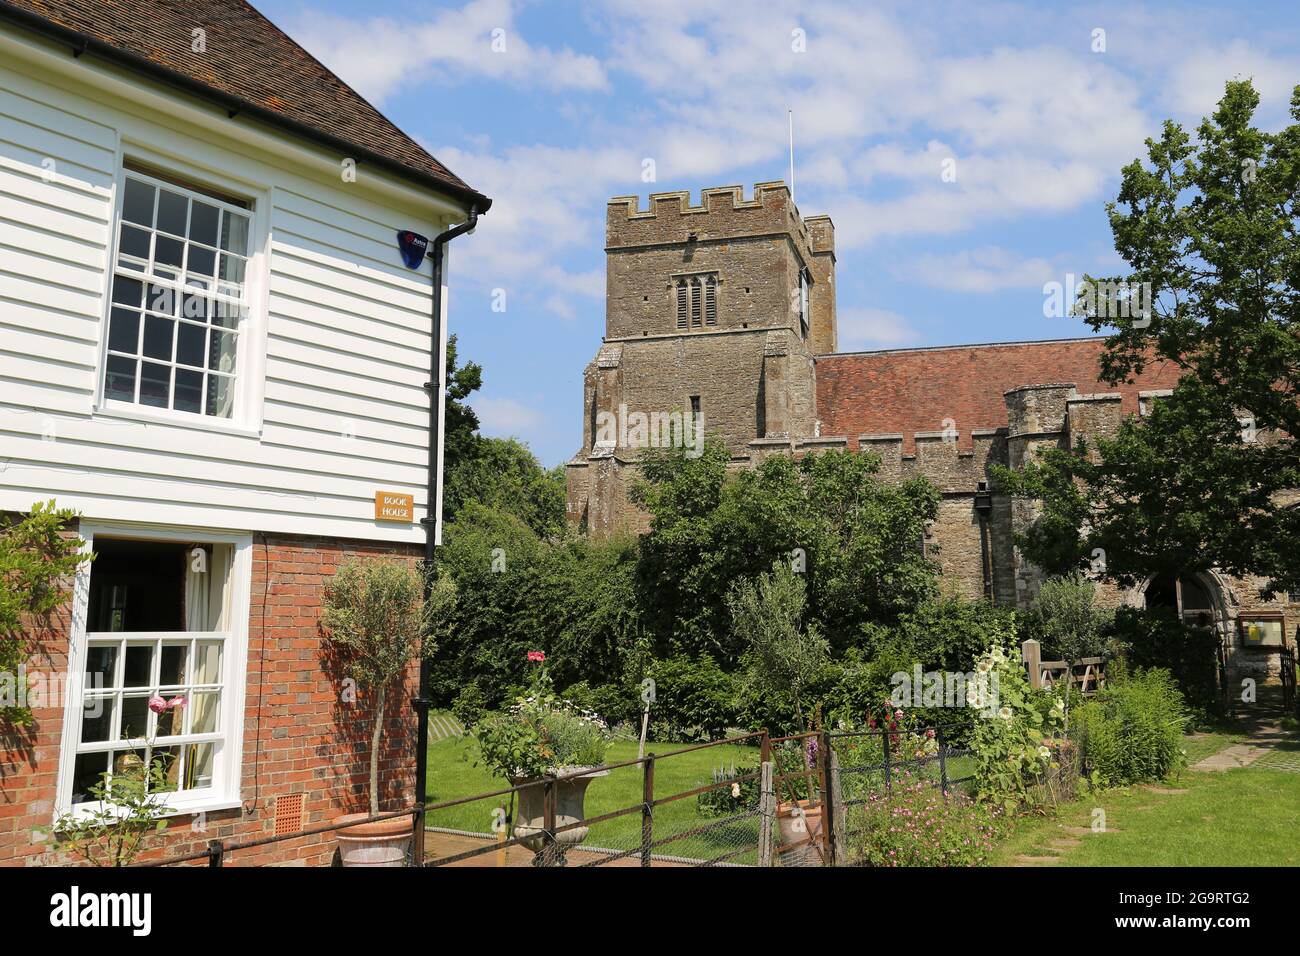 Maison du livre (anciennement Squirrel Cottage) et église St Pierre et St Paul, promenade de l'église, Headcorn, Kent, Angleterre, Grande-Bretagne, Royaume-Uni, Europe Banque D'Images